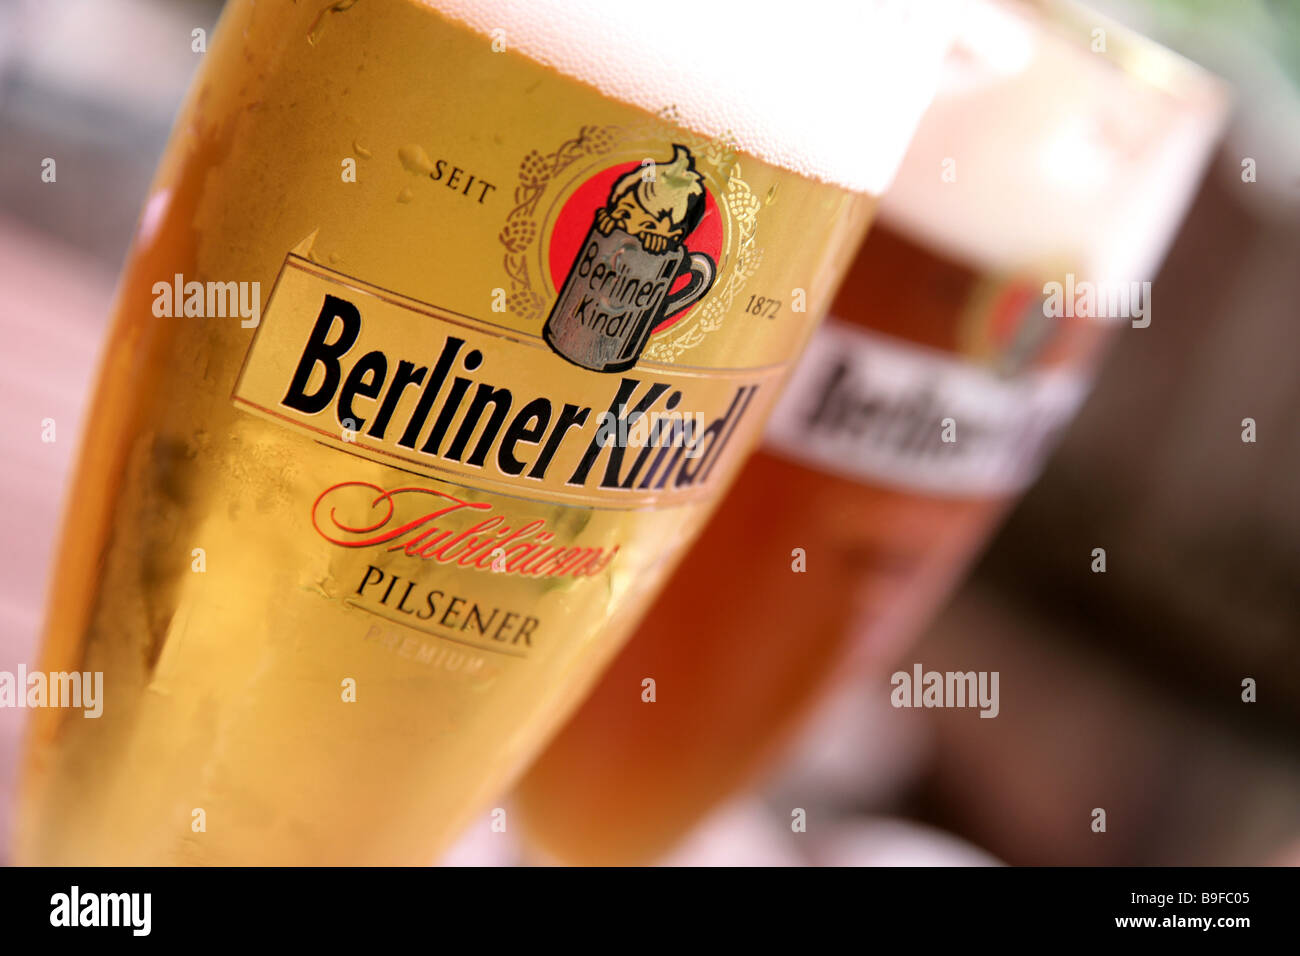 Vintage Berliner Kindl Beer Label Export Germany Child Stein Logo